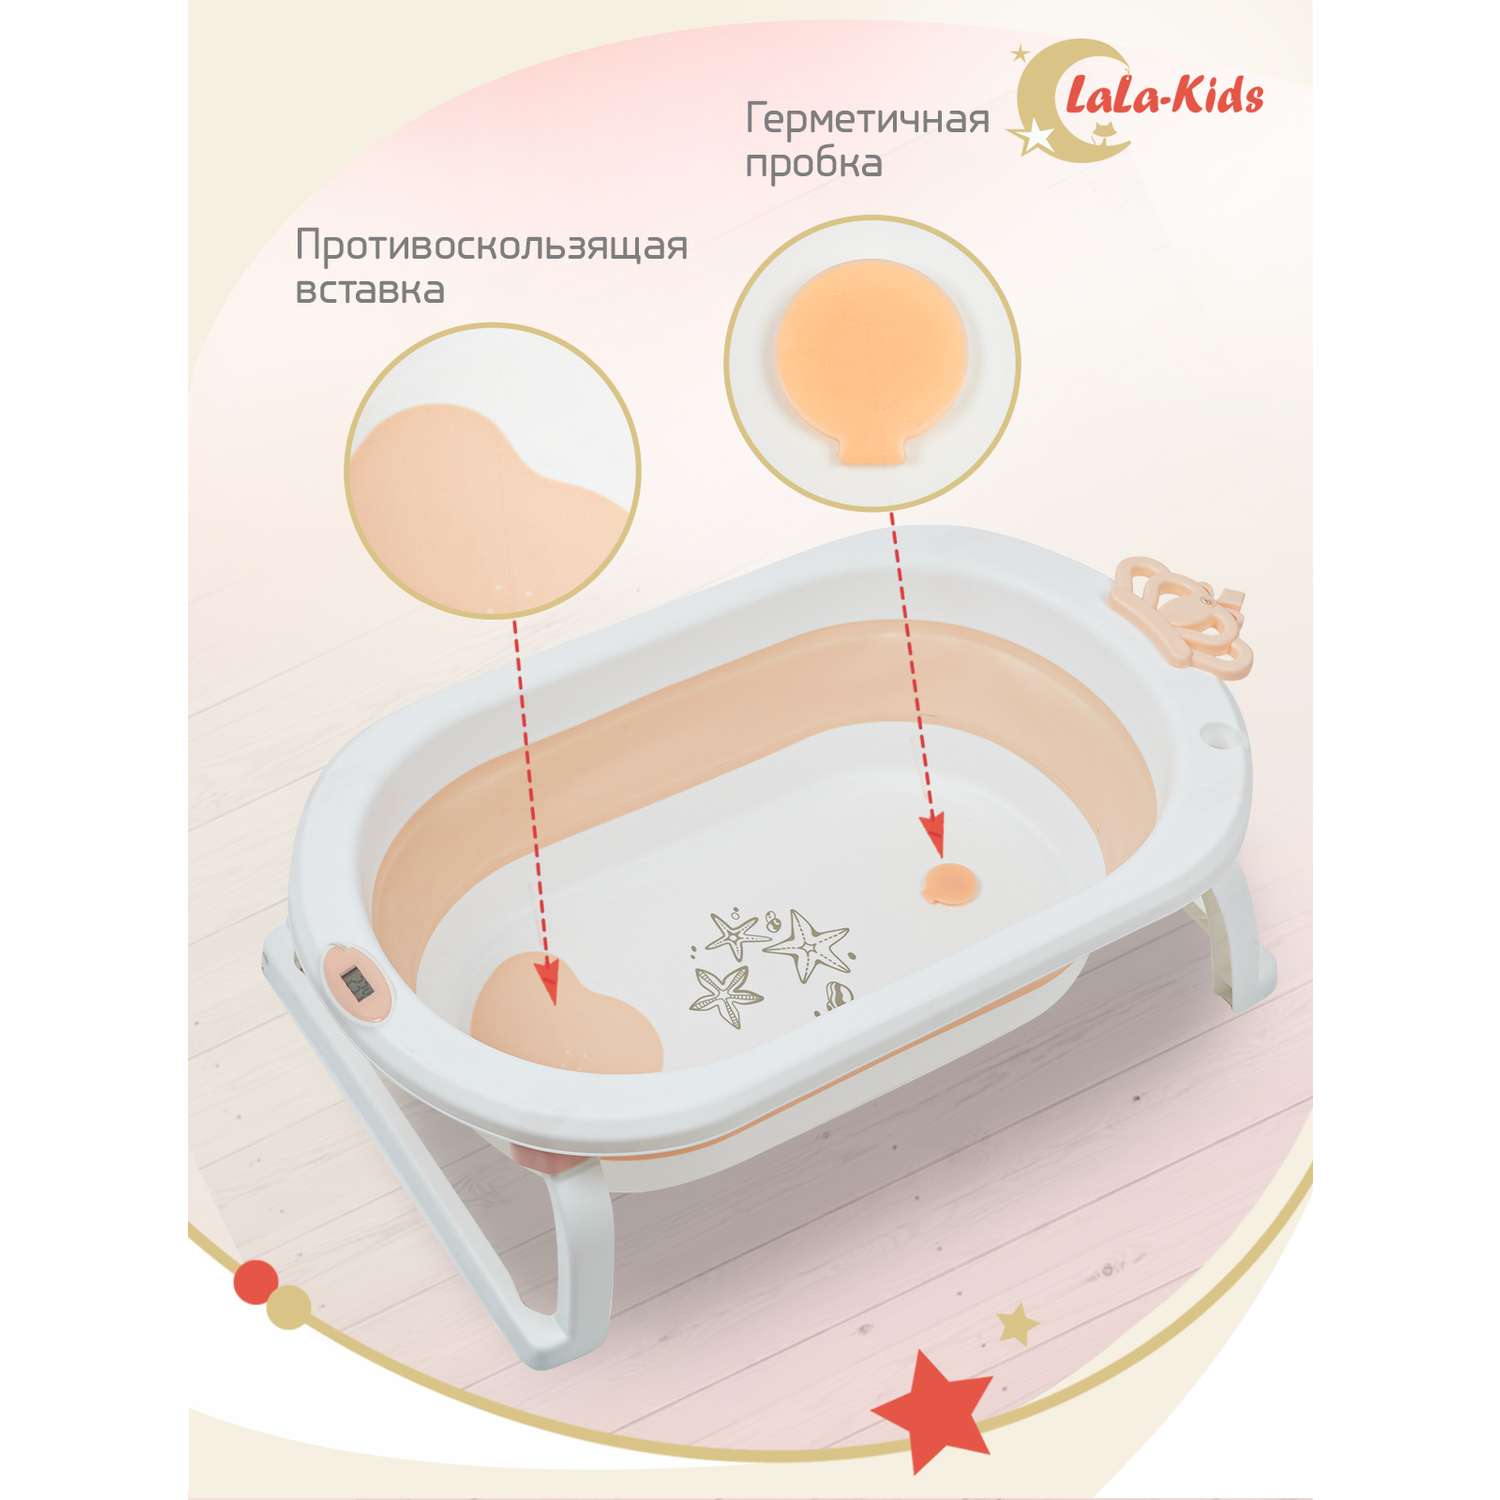 Детская ванночка с термометром LaLa-Kids складная для купания новорожденных с матрасиком в комплекте - фото 6